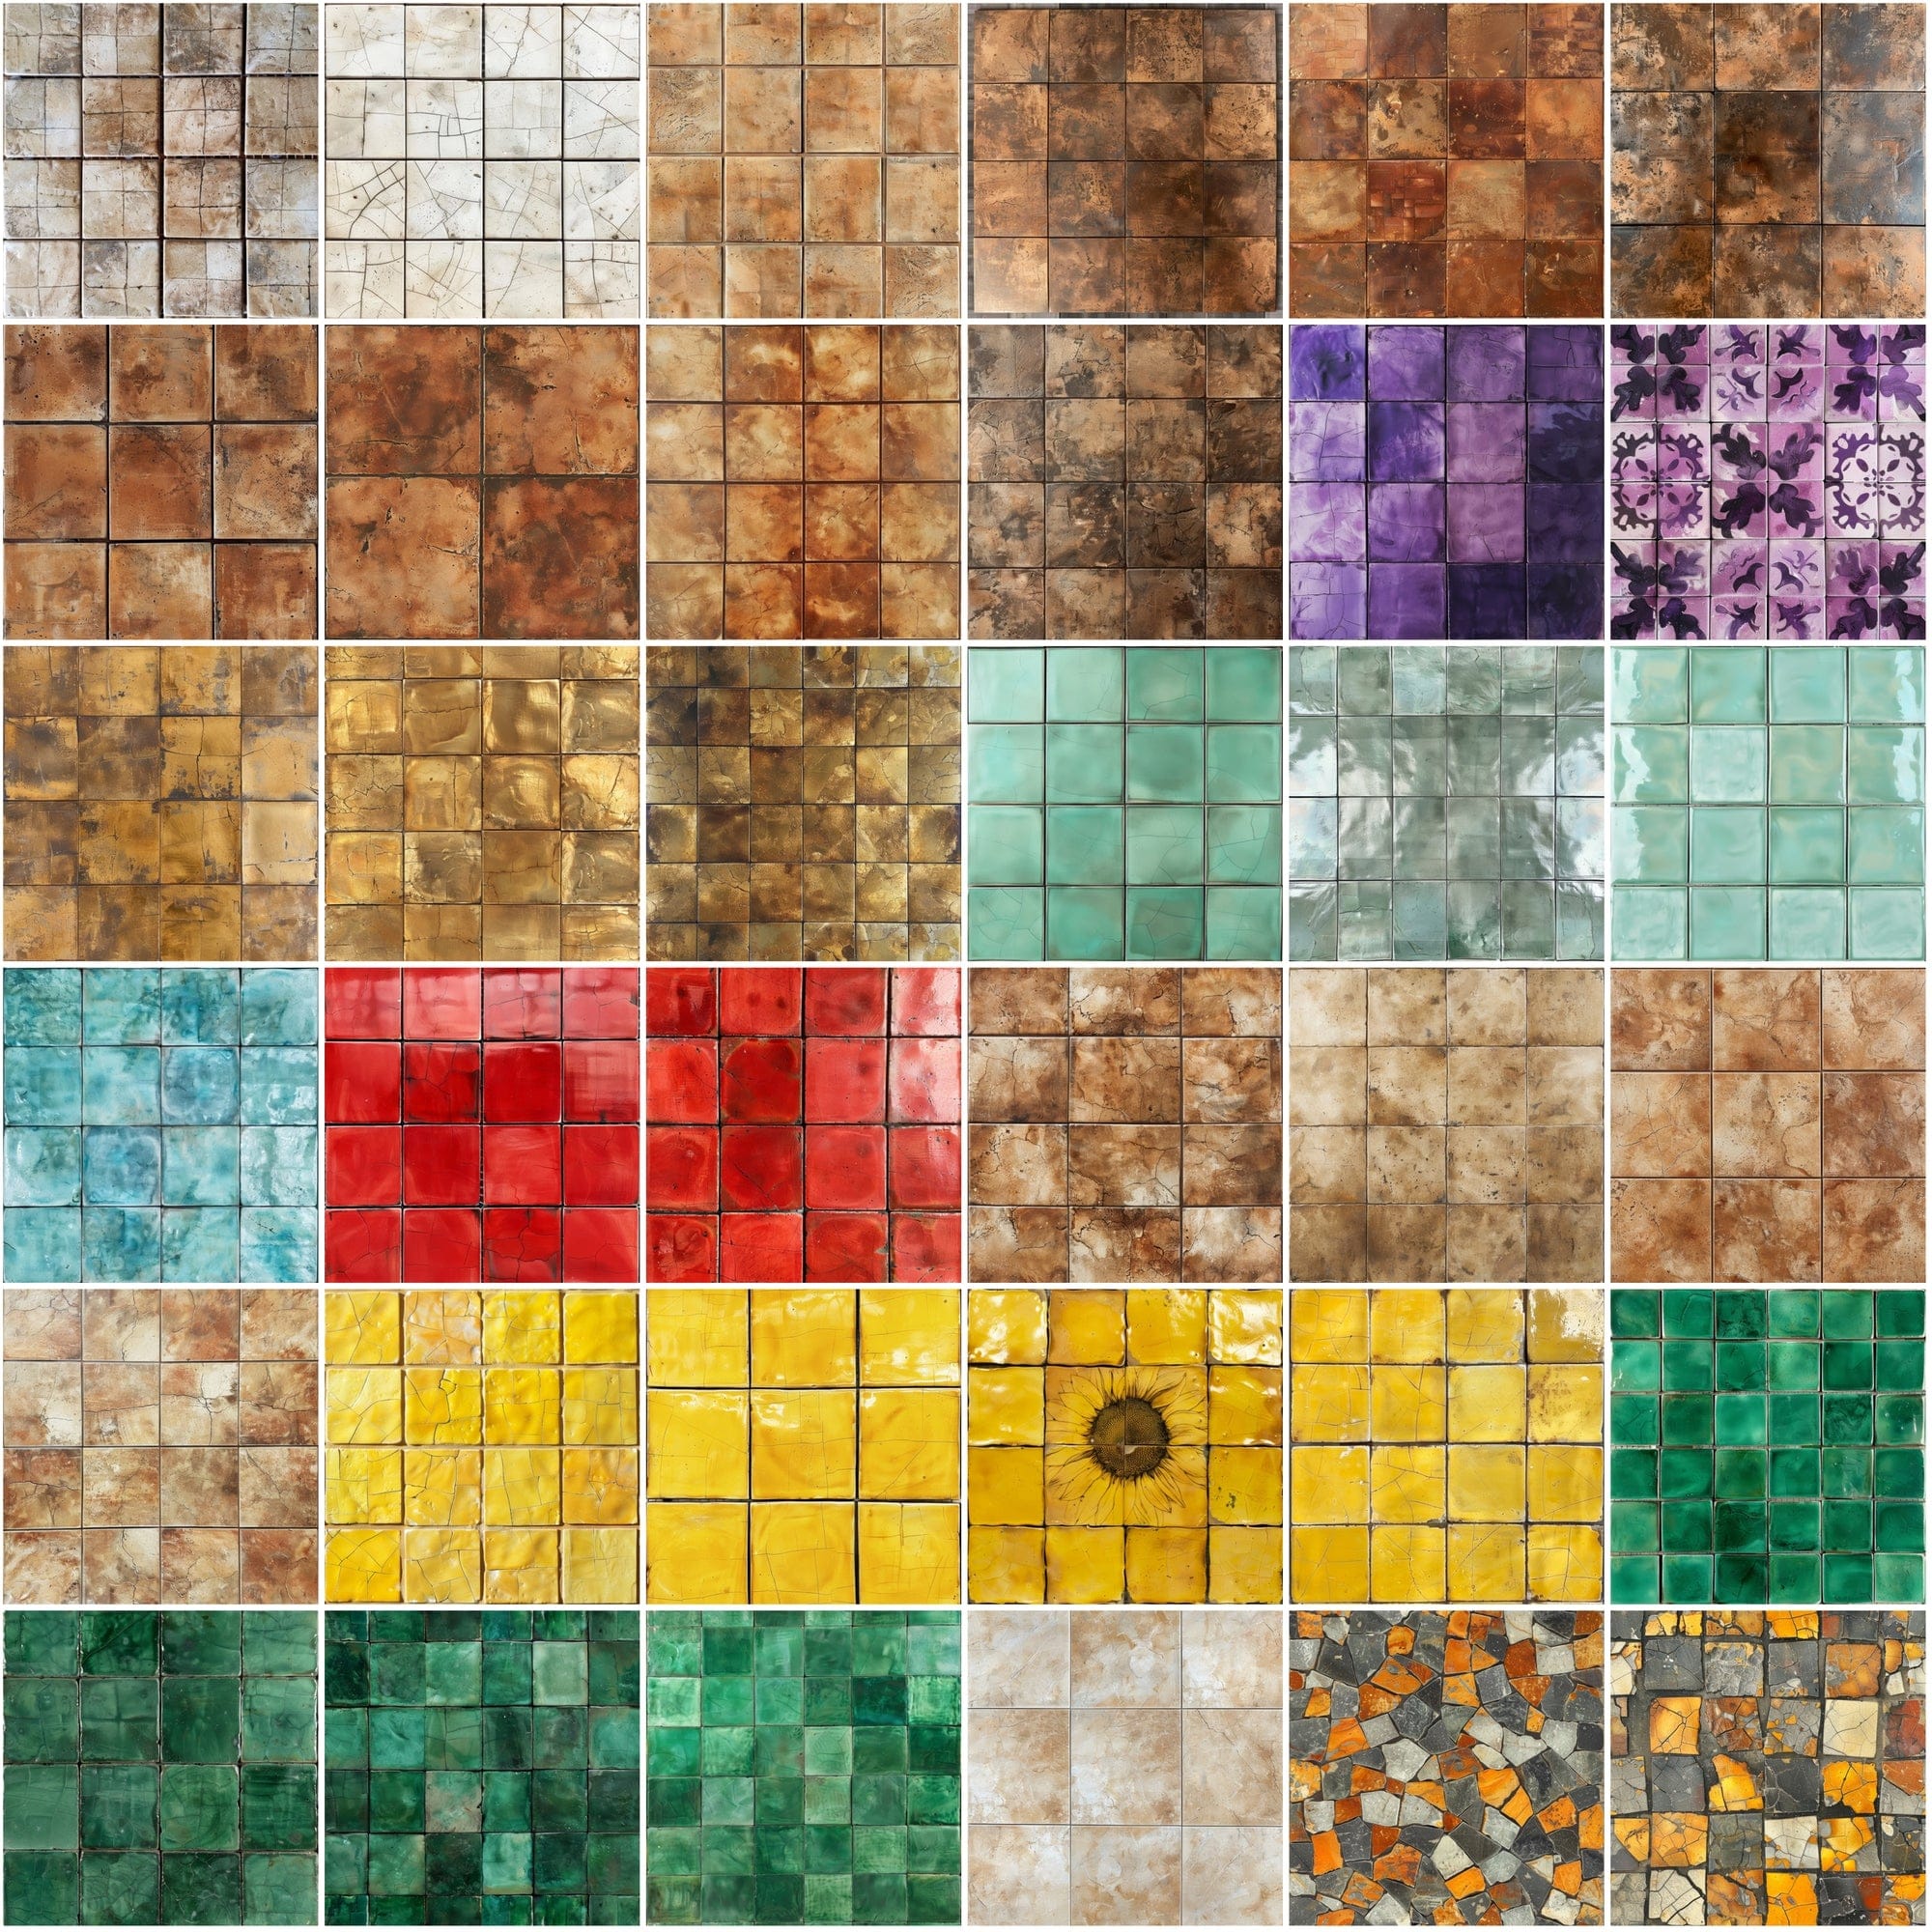 330 Ceramic Tile Seamless Patterns Bundle - High-Resolution JPG, Photoshop PAT - Commercial License Included Digital Download Sumobundle